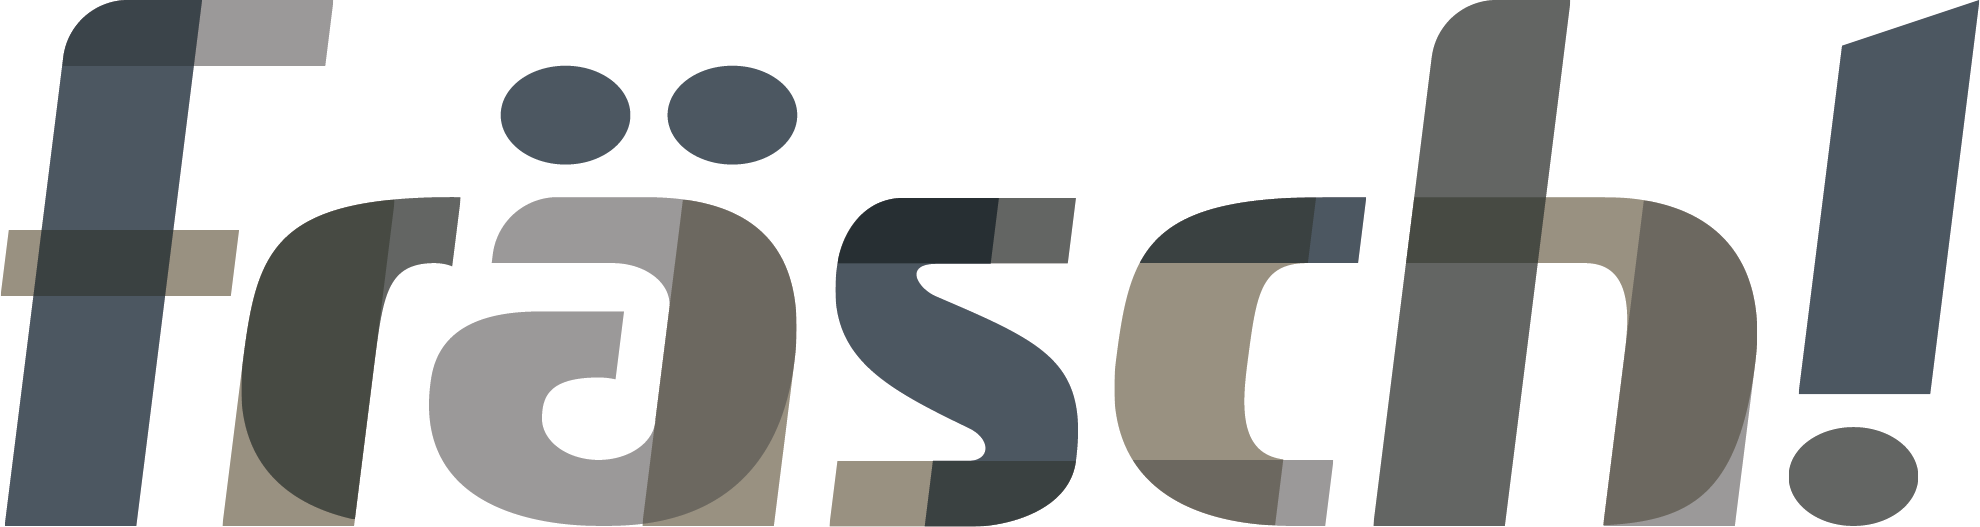 frasch Logo.png